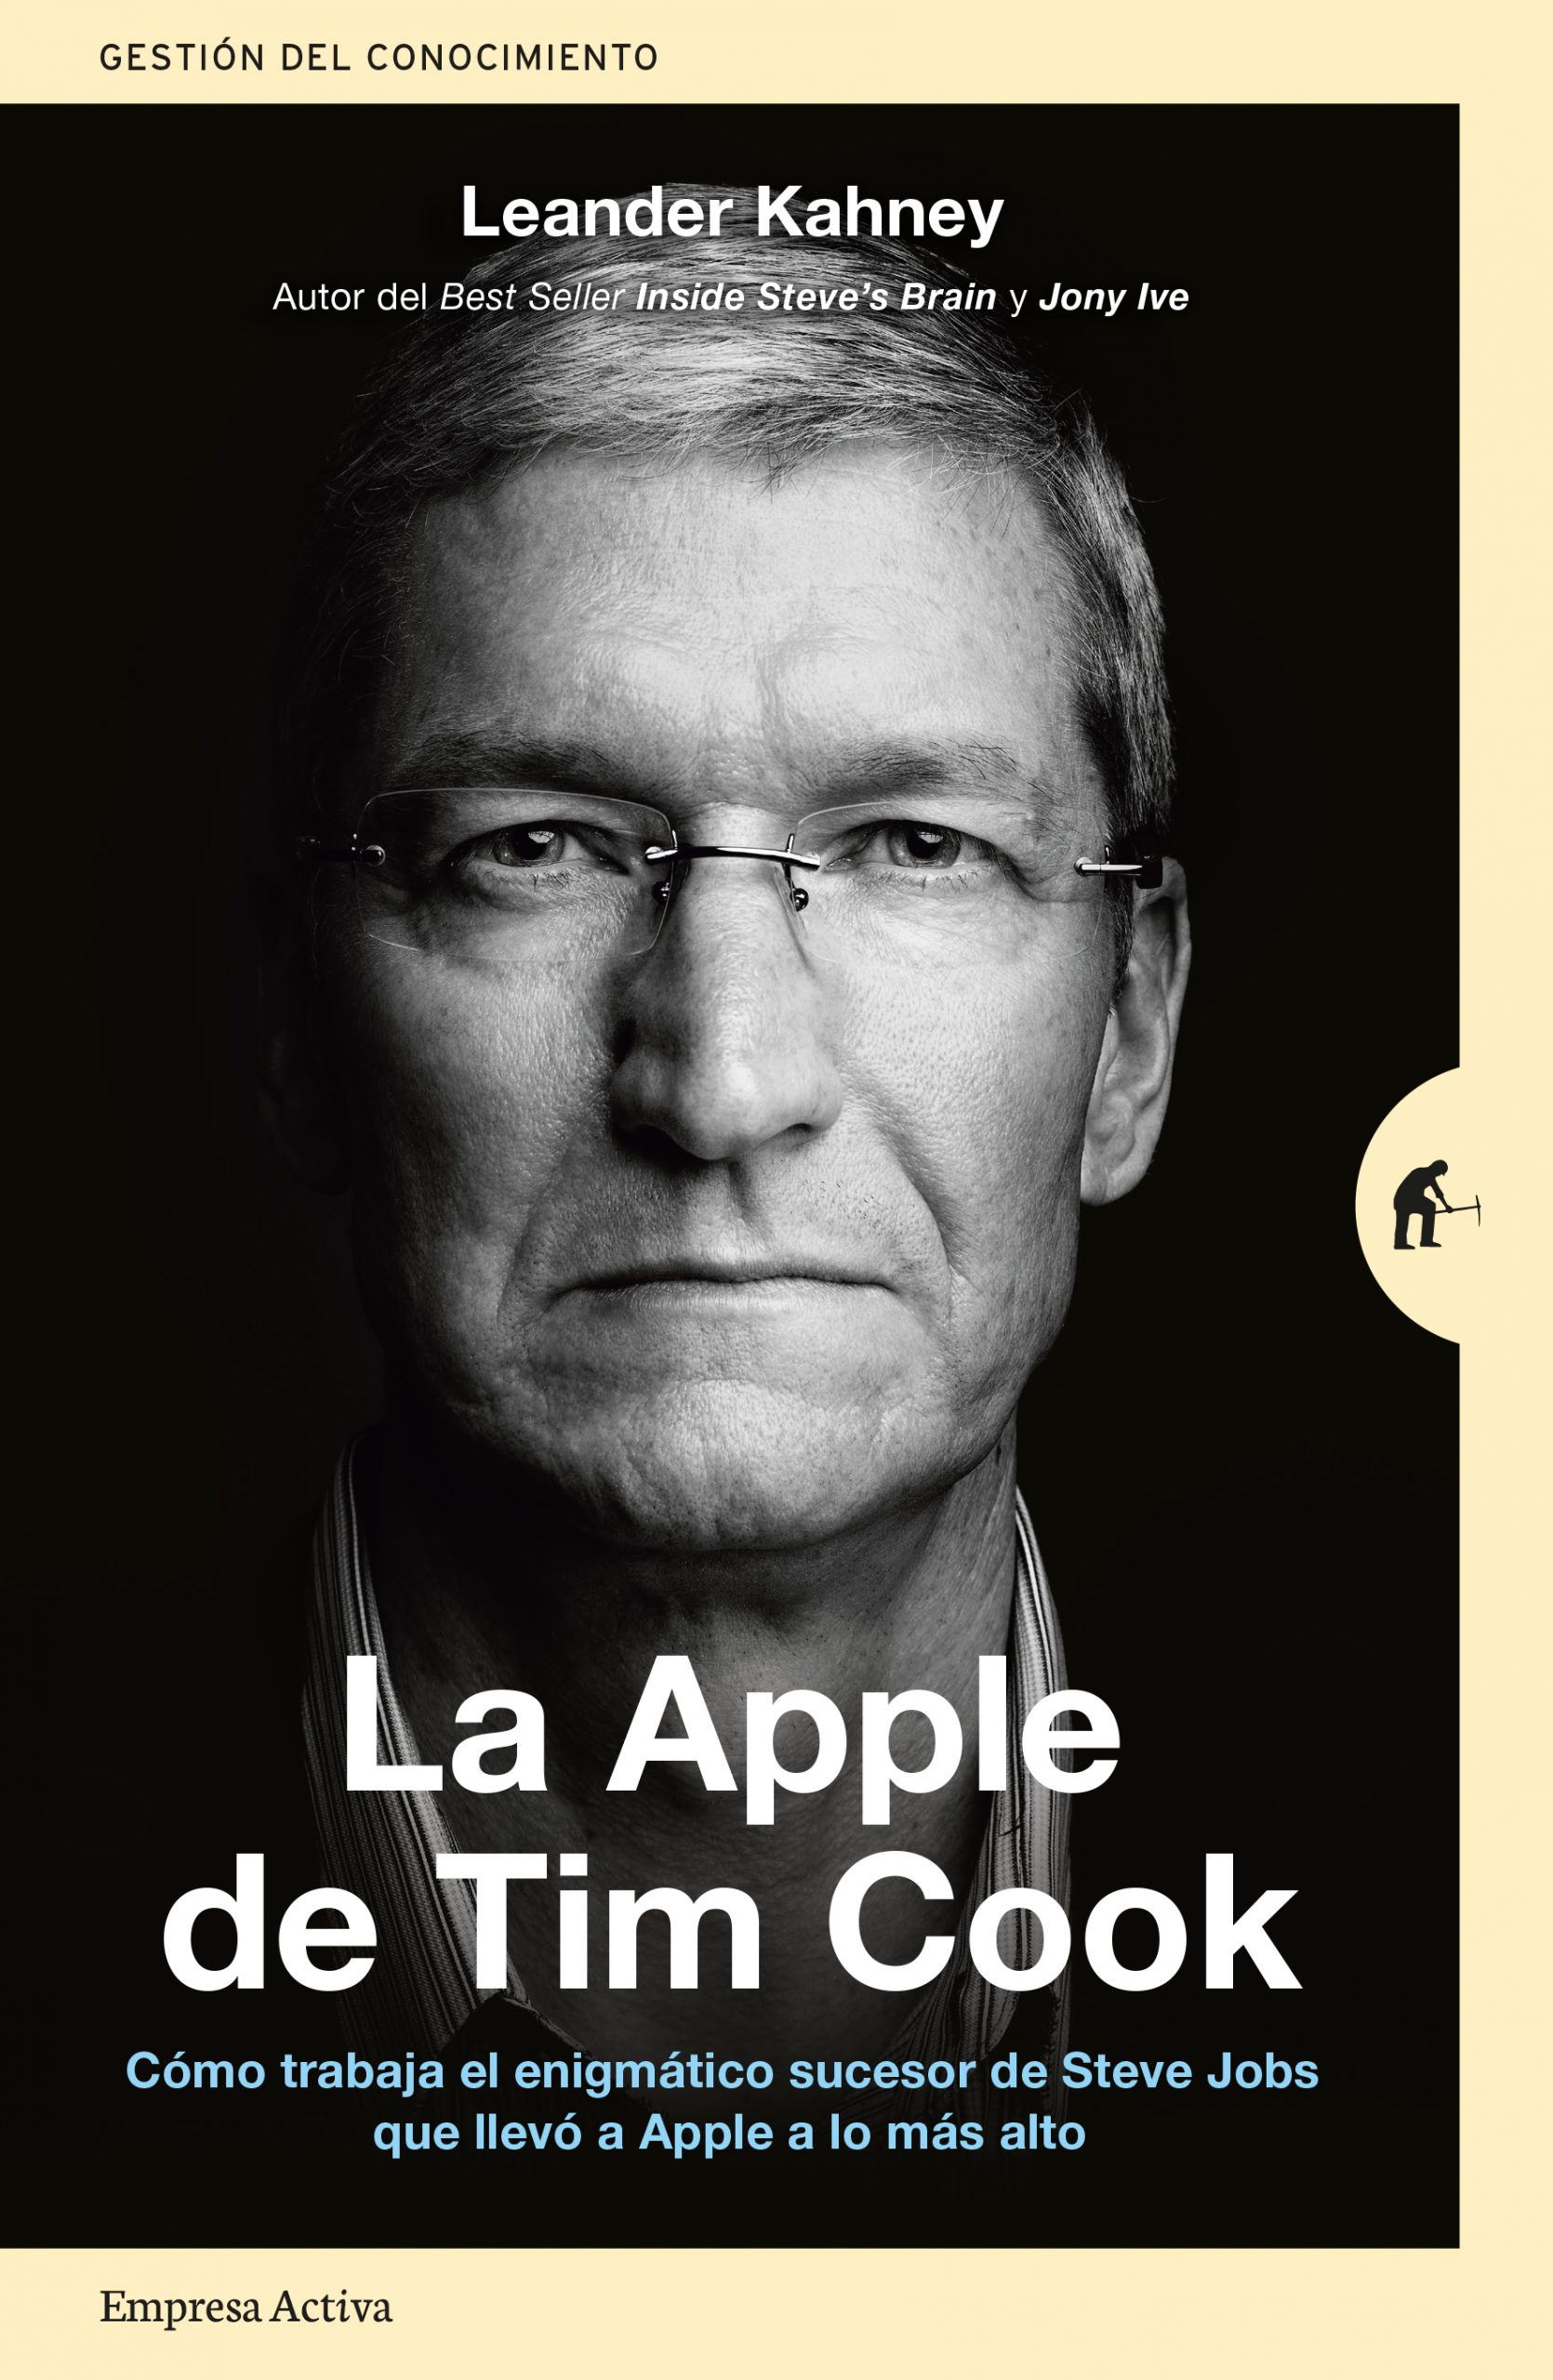 Portada del libro La Apple de Tim Cook, escrito por Leander Kahney.